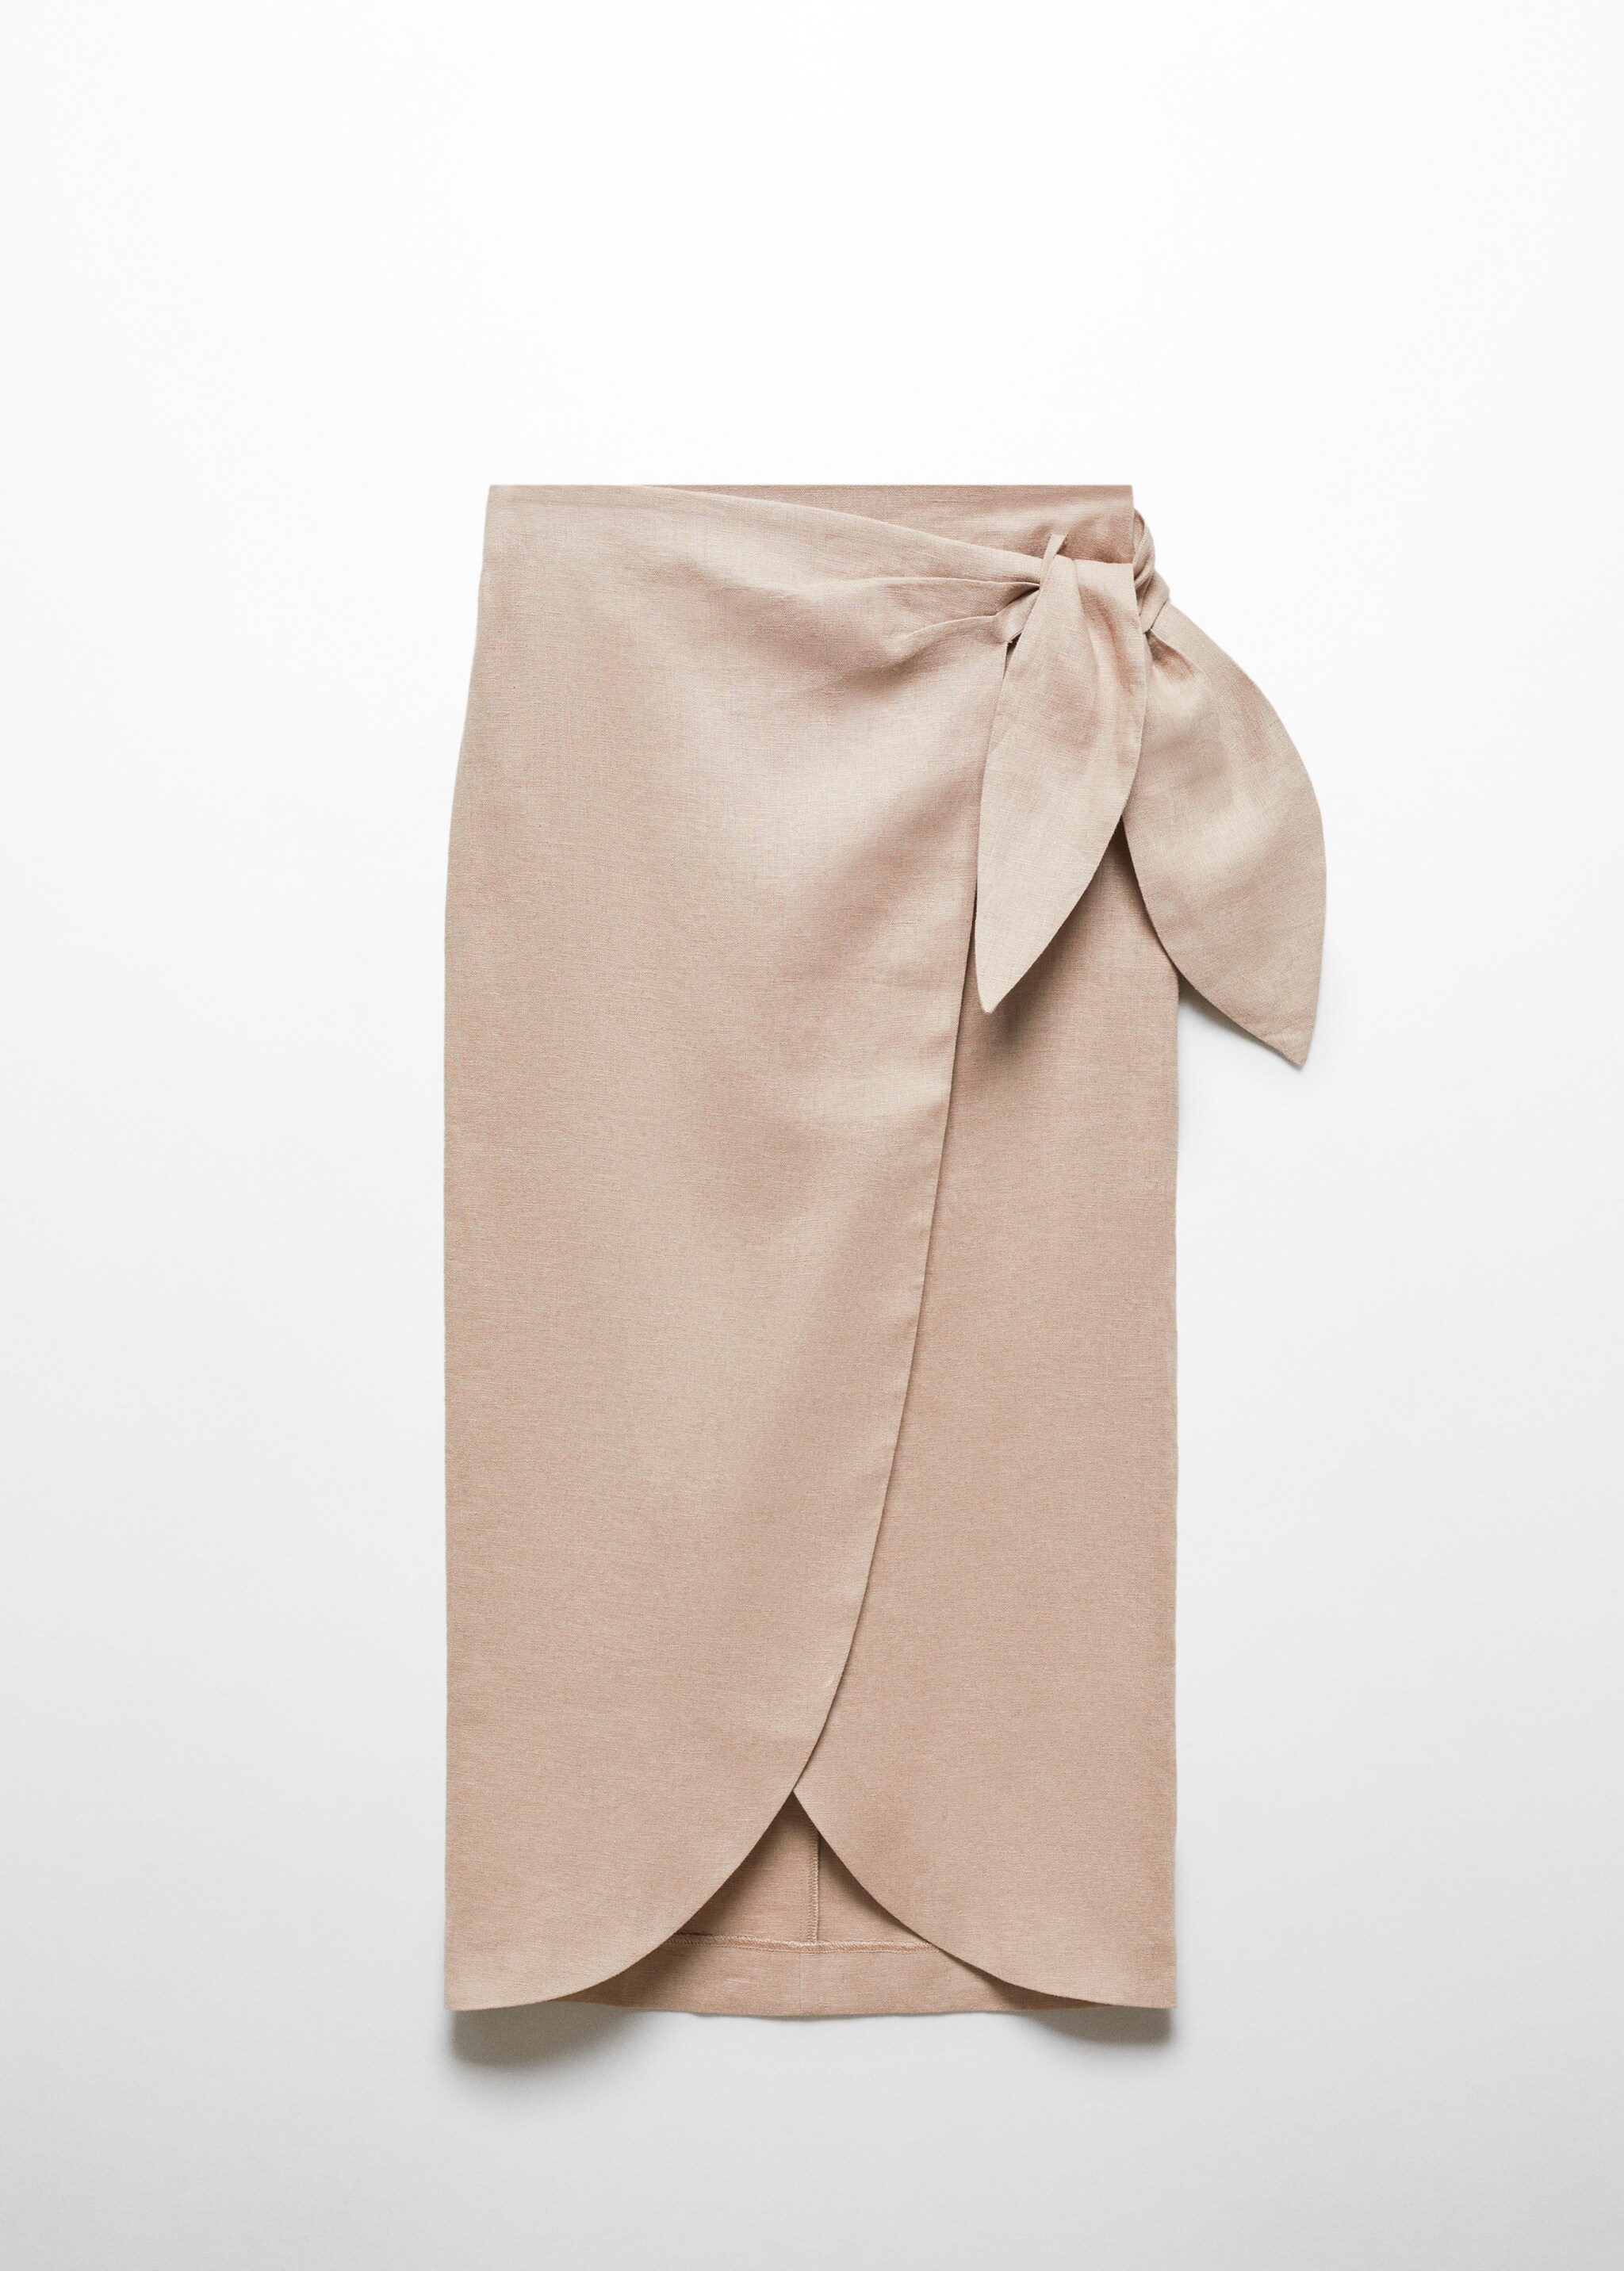 Falda pareo lino - Artículo sin modelo